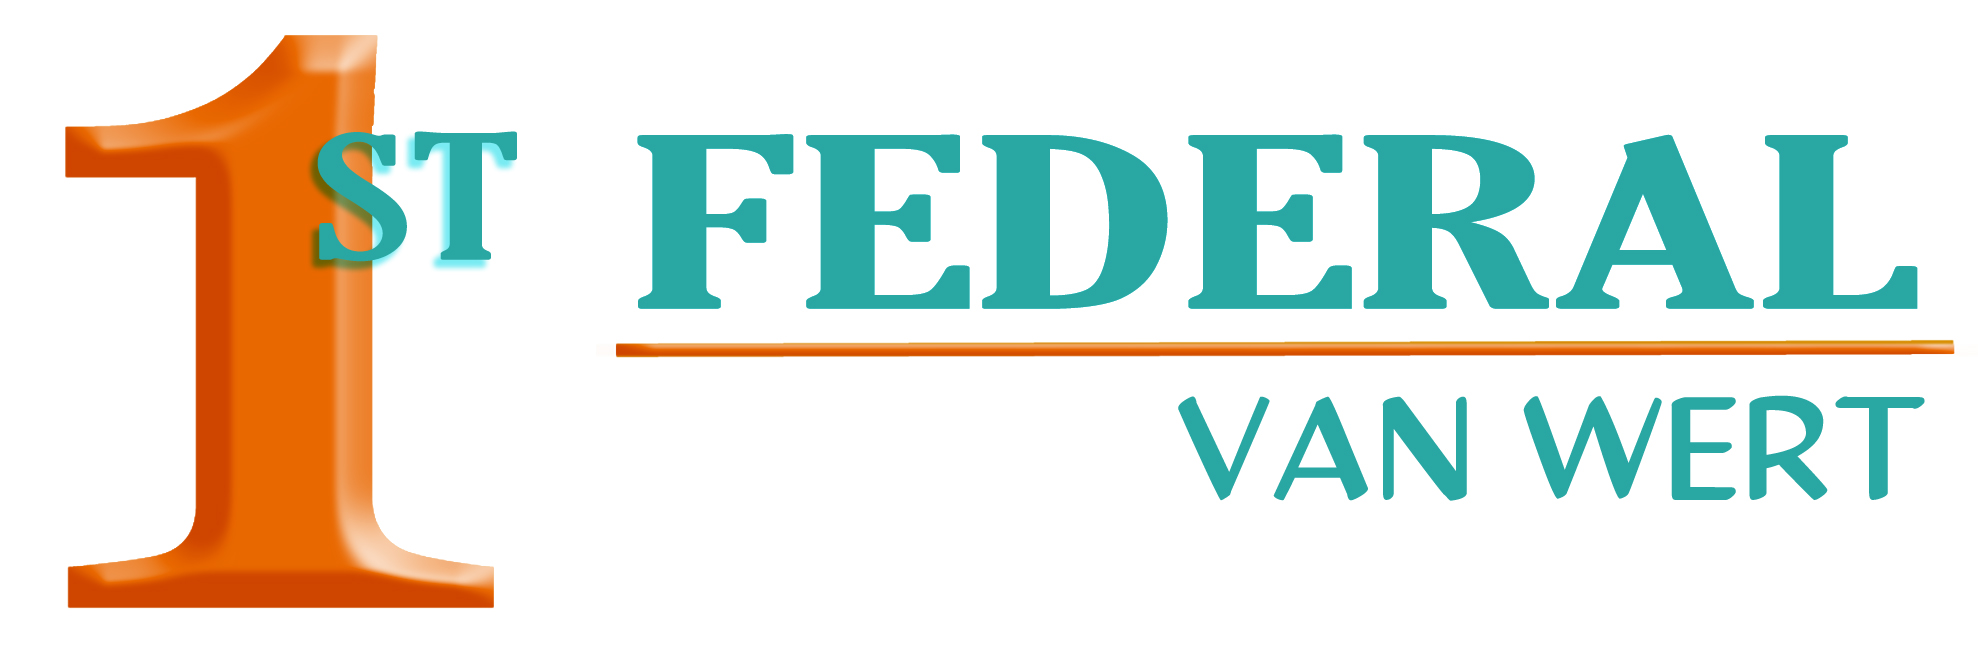 first federal logo(B) 7-22